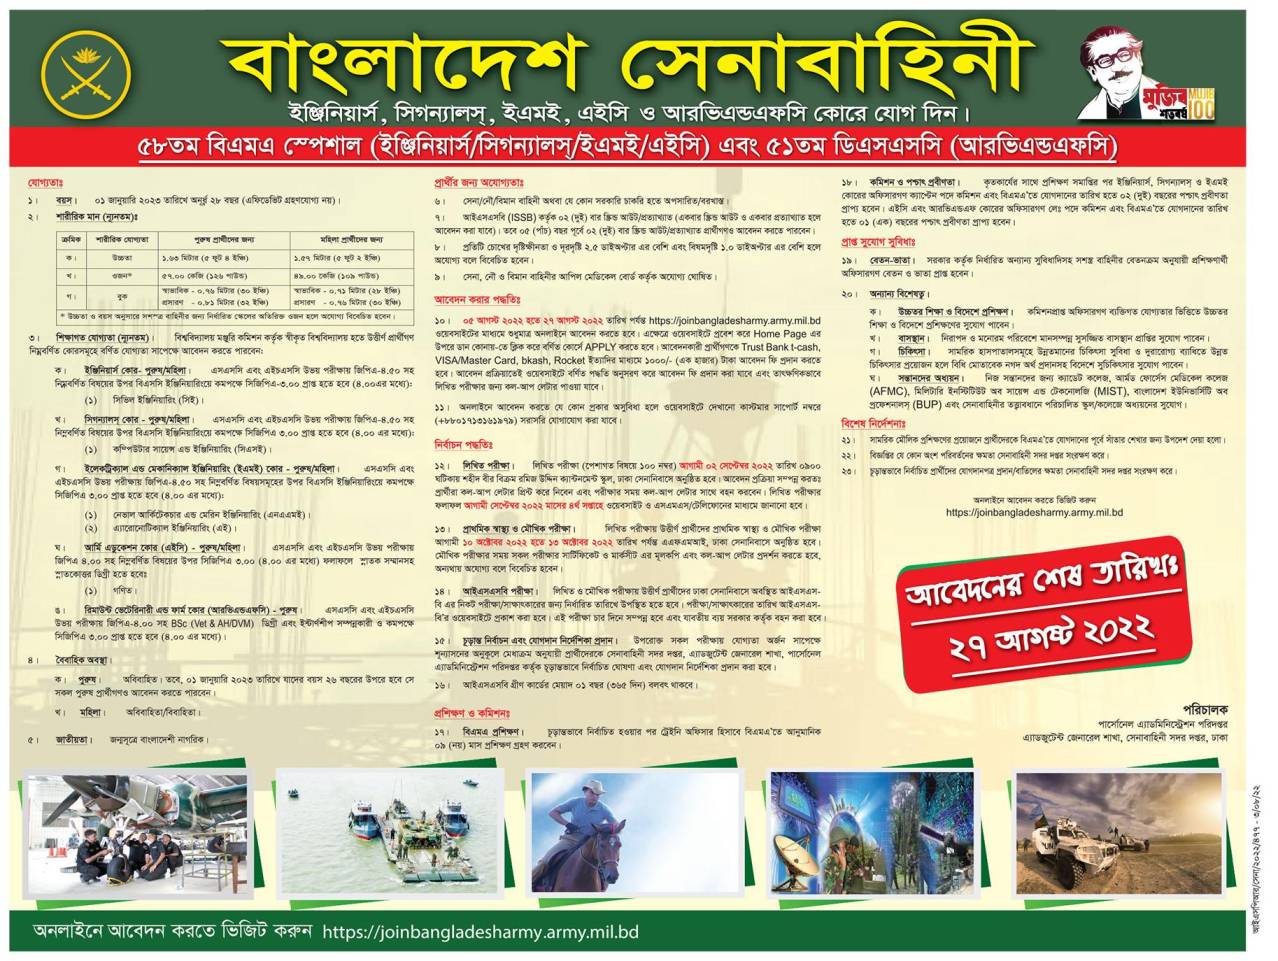  বাংলাদেশ সেনাবাহিনী  নিয়োগ বিজ্ঞপ্তি ২০২২ | Bangladesh Army job circular 2022